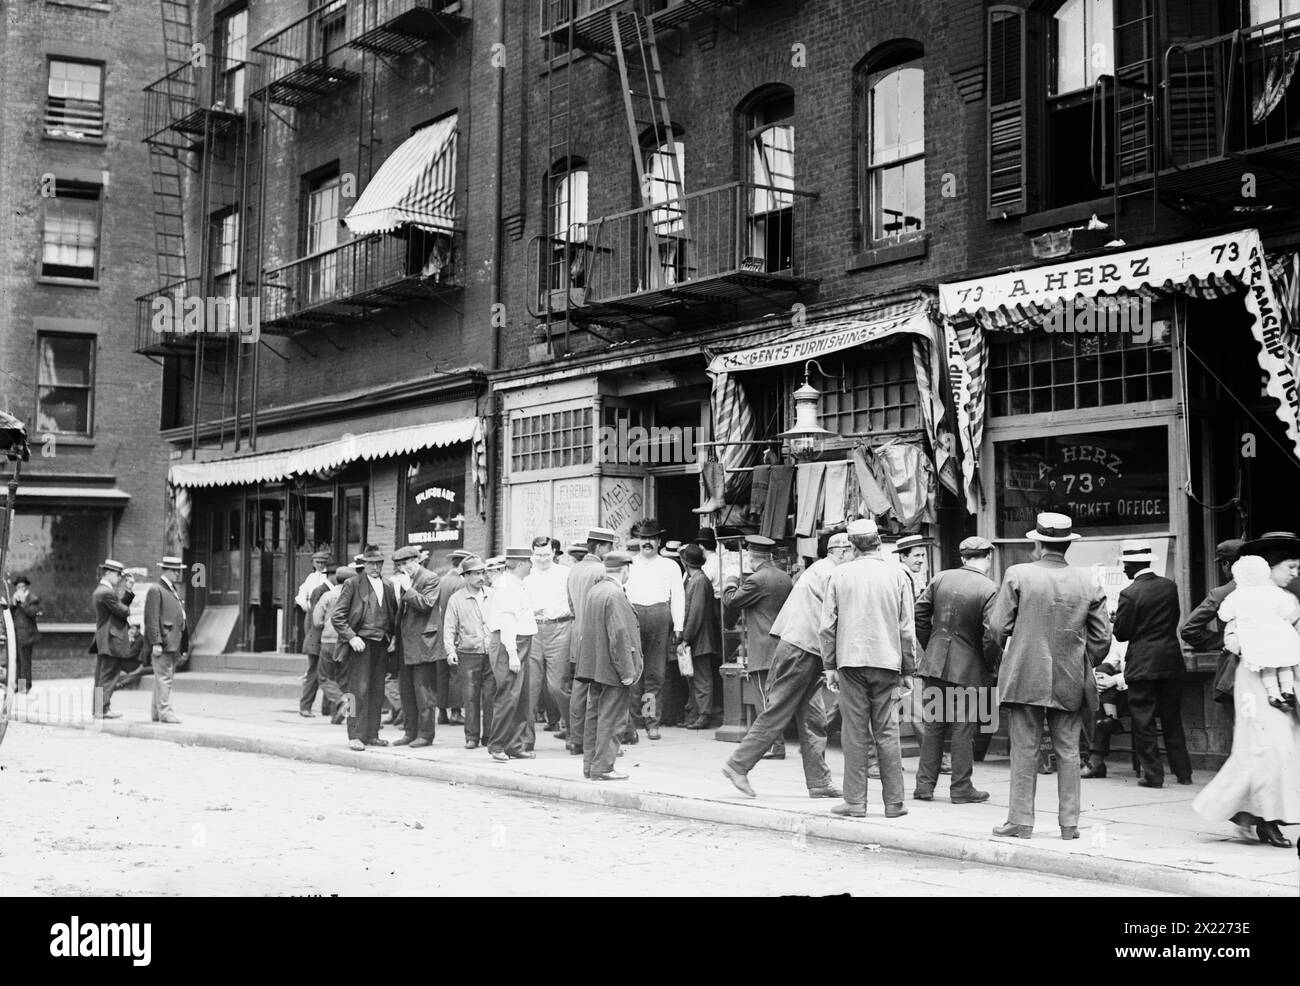 Long shoreman's strike - N.Y., between c1910 and c1915. Stock Photo